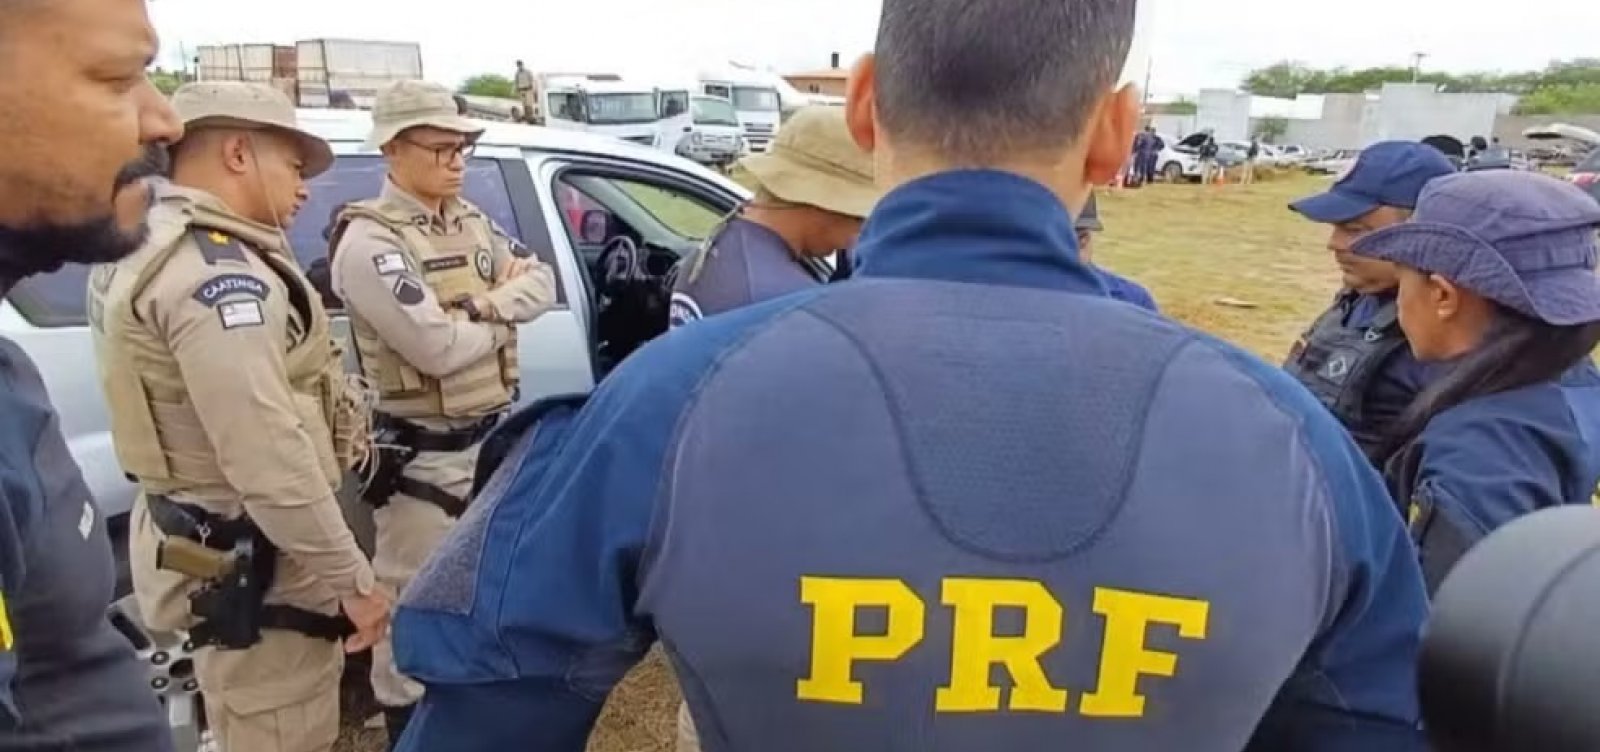 PRF recupera 48 veículos e prende 10 pessoas durante operação na Bahia, Alagoas e Pernambuco